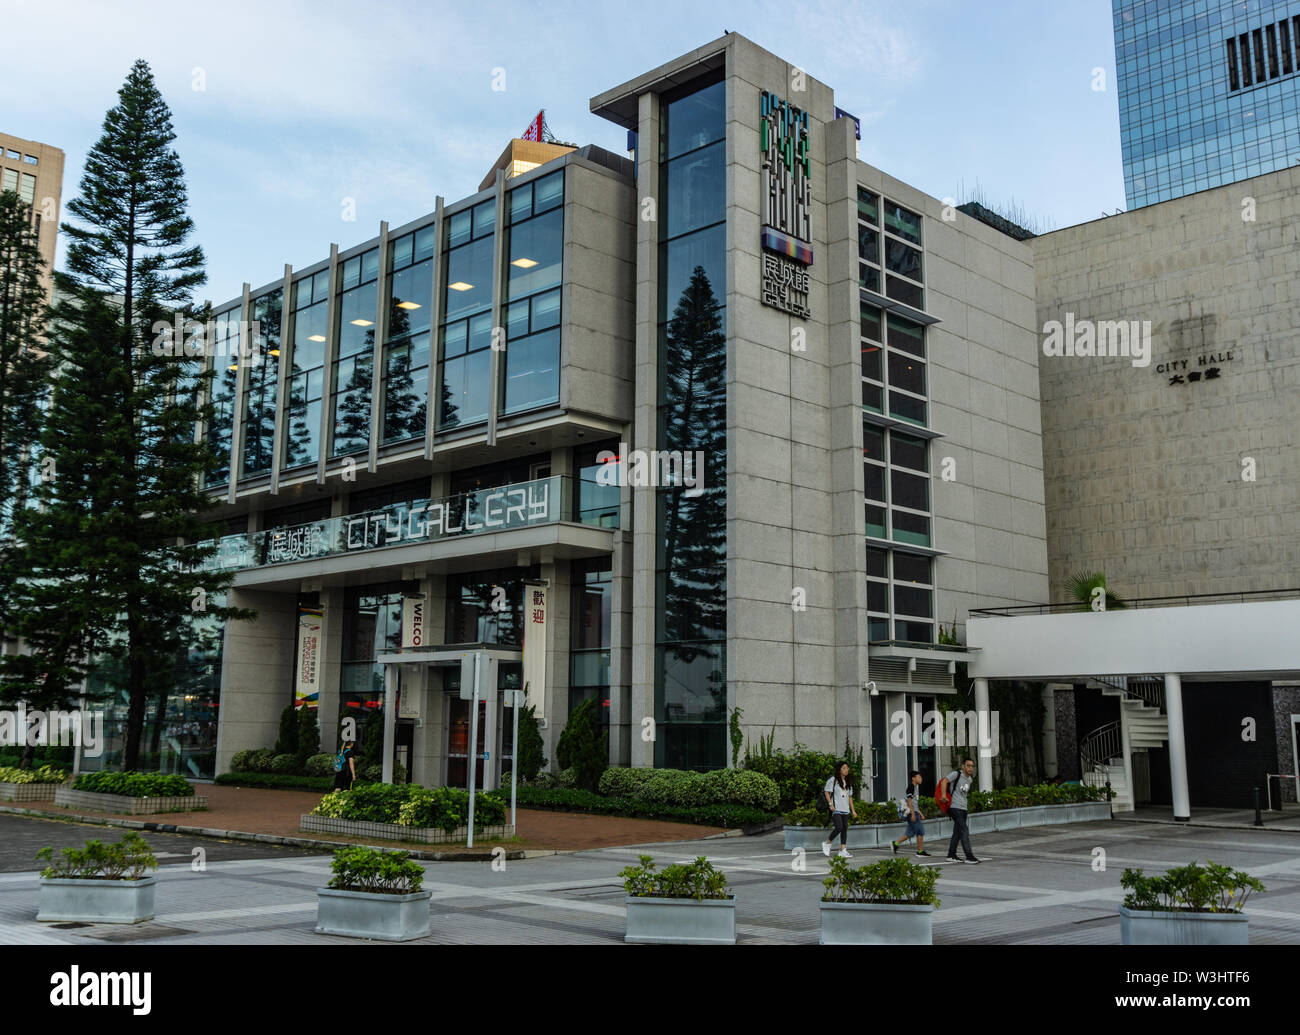 Facade of City Gallery in Hong Kong Stock Photo